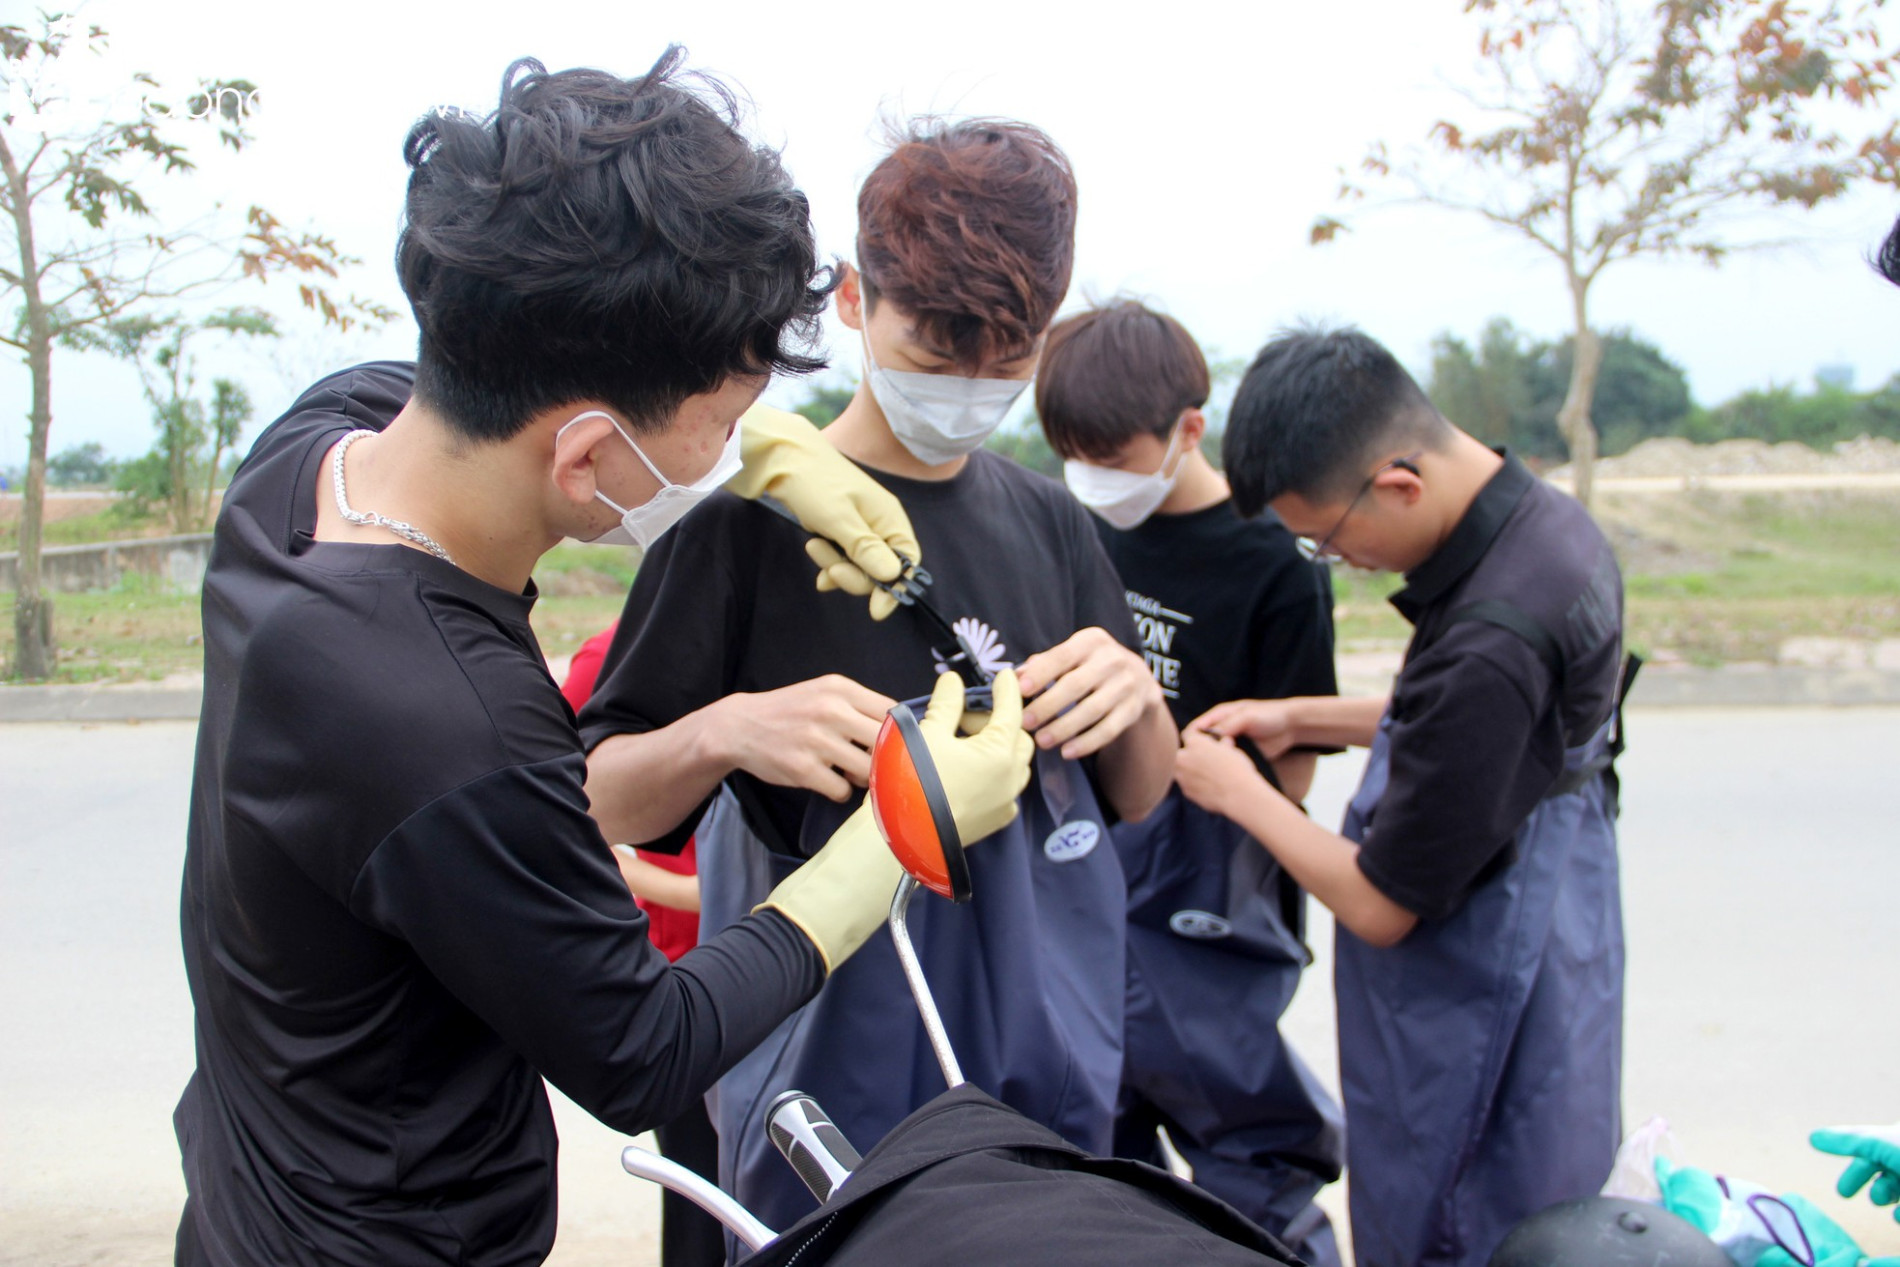 Nghệ An Xanh - Nhóm bạn trẻ gen Z tình nguyện dọn rác, làm sạch môi trường ảnh 2